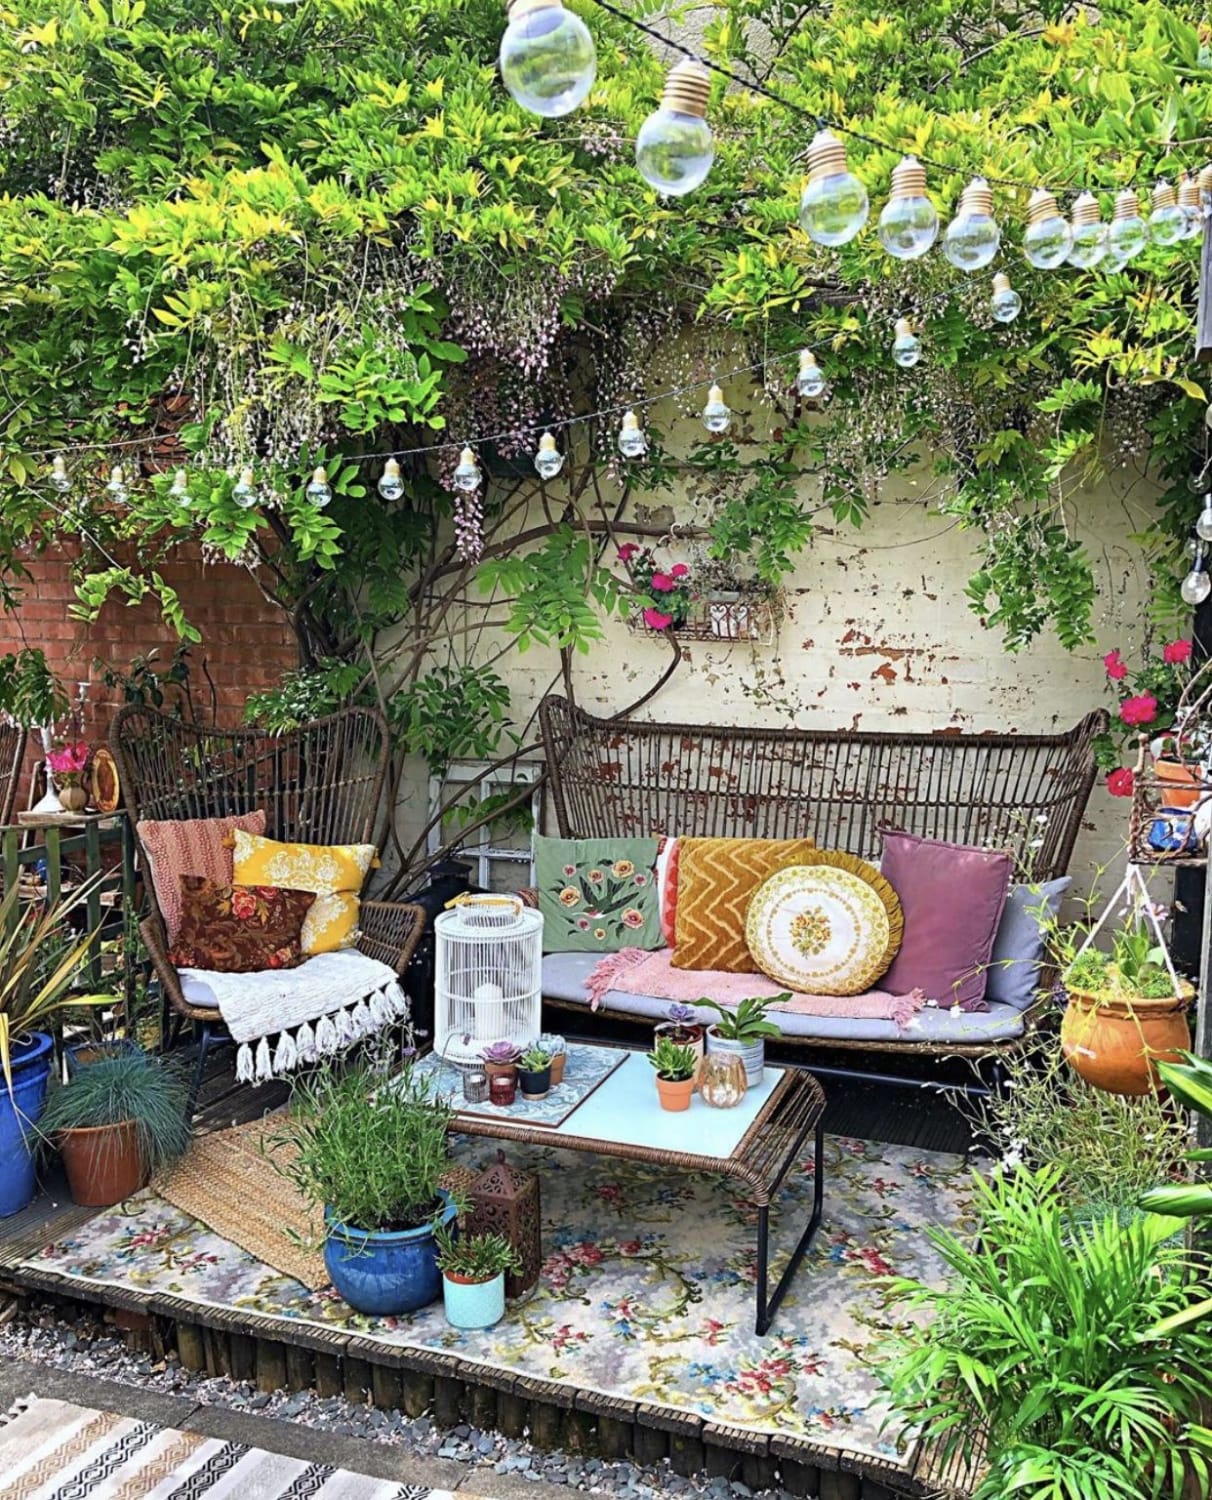 Pin by Julia Johnson on outdoor life | Backyard decor, Backyard patio designs, Small courtyard gardens